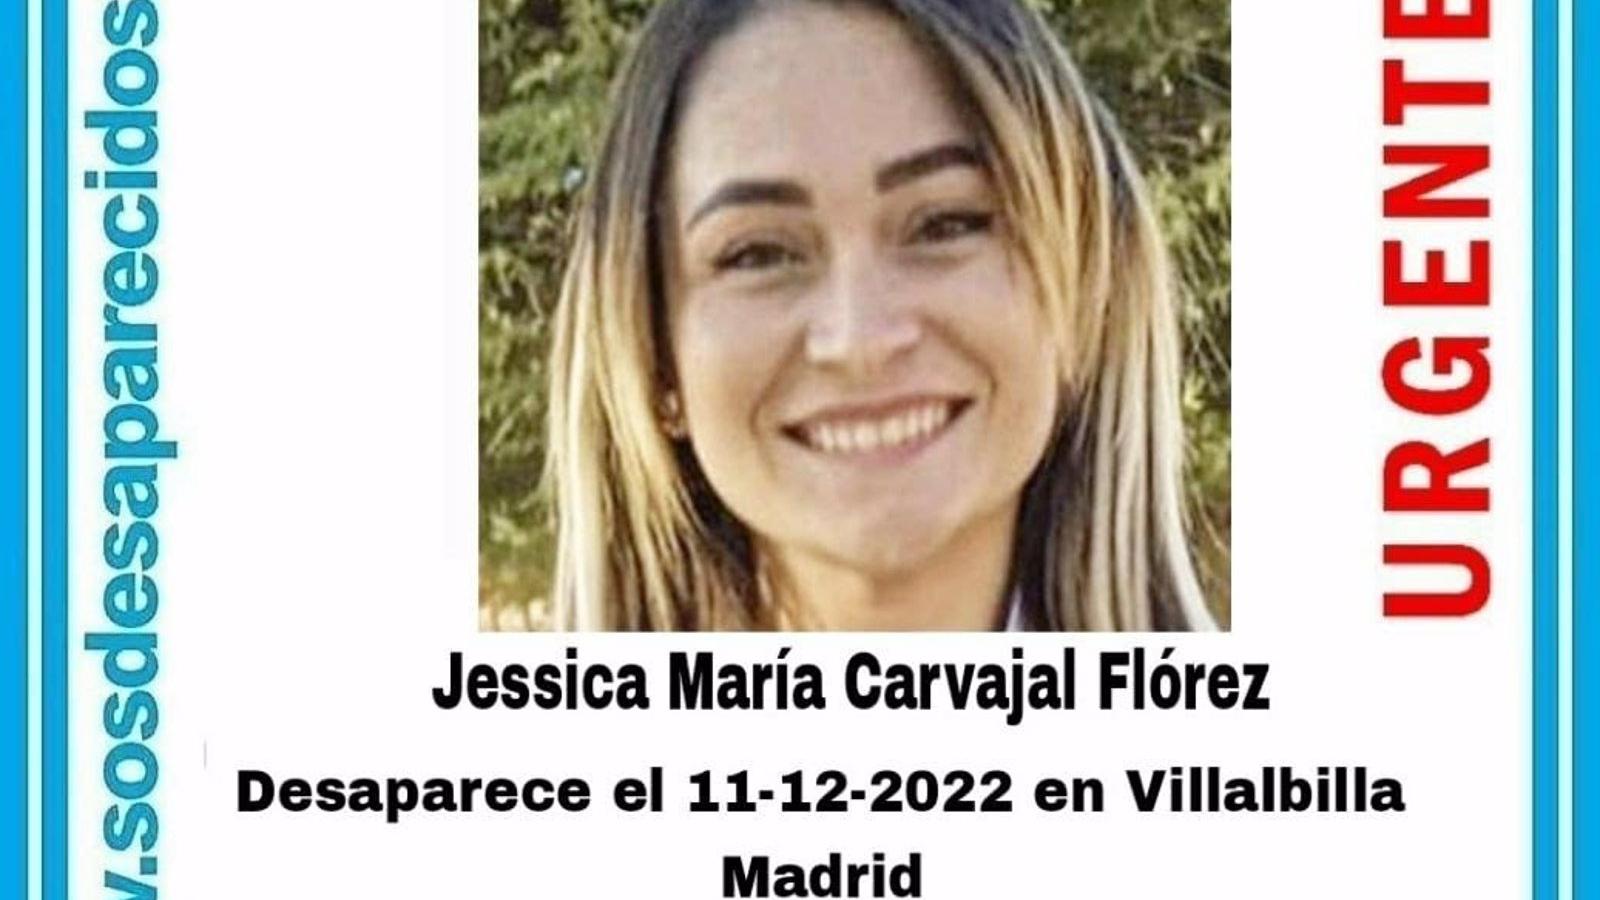 Buscan a una mujer de 26 años desaparecida desde el día 11 en Villalbilla